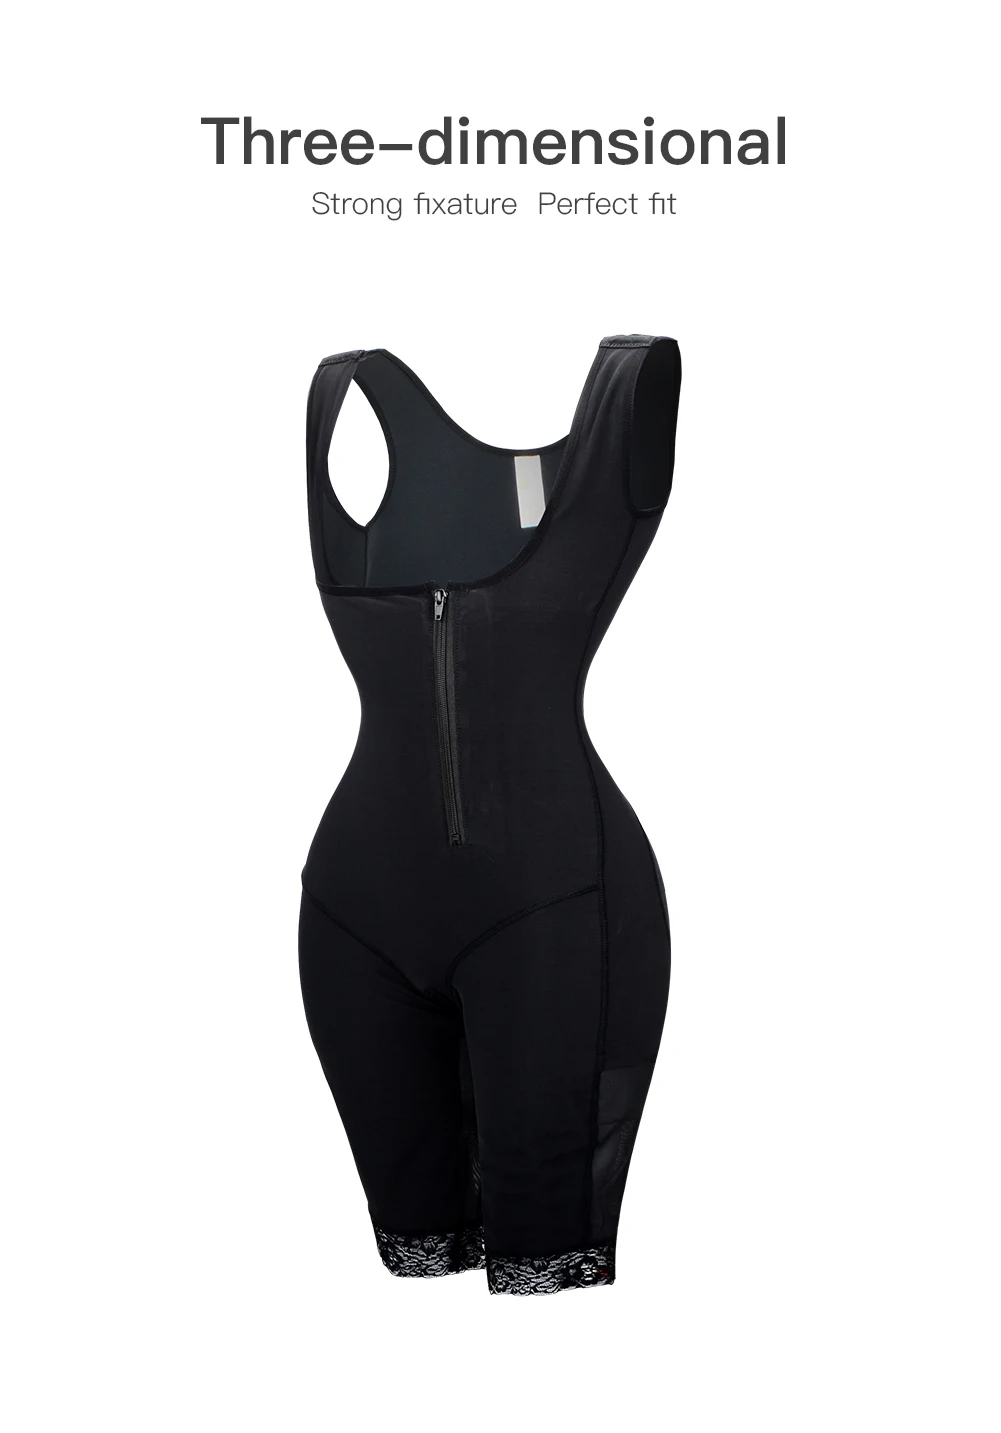 AICONL Для женщин супер большие размеры кожи черного цвета для похудения формирователь, утягивающий живот ягодицы гимнастический костюм Корректирующее белье